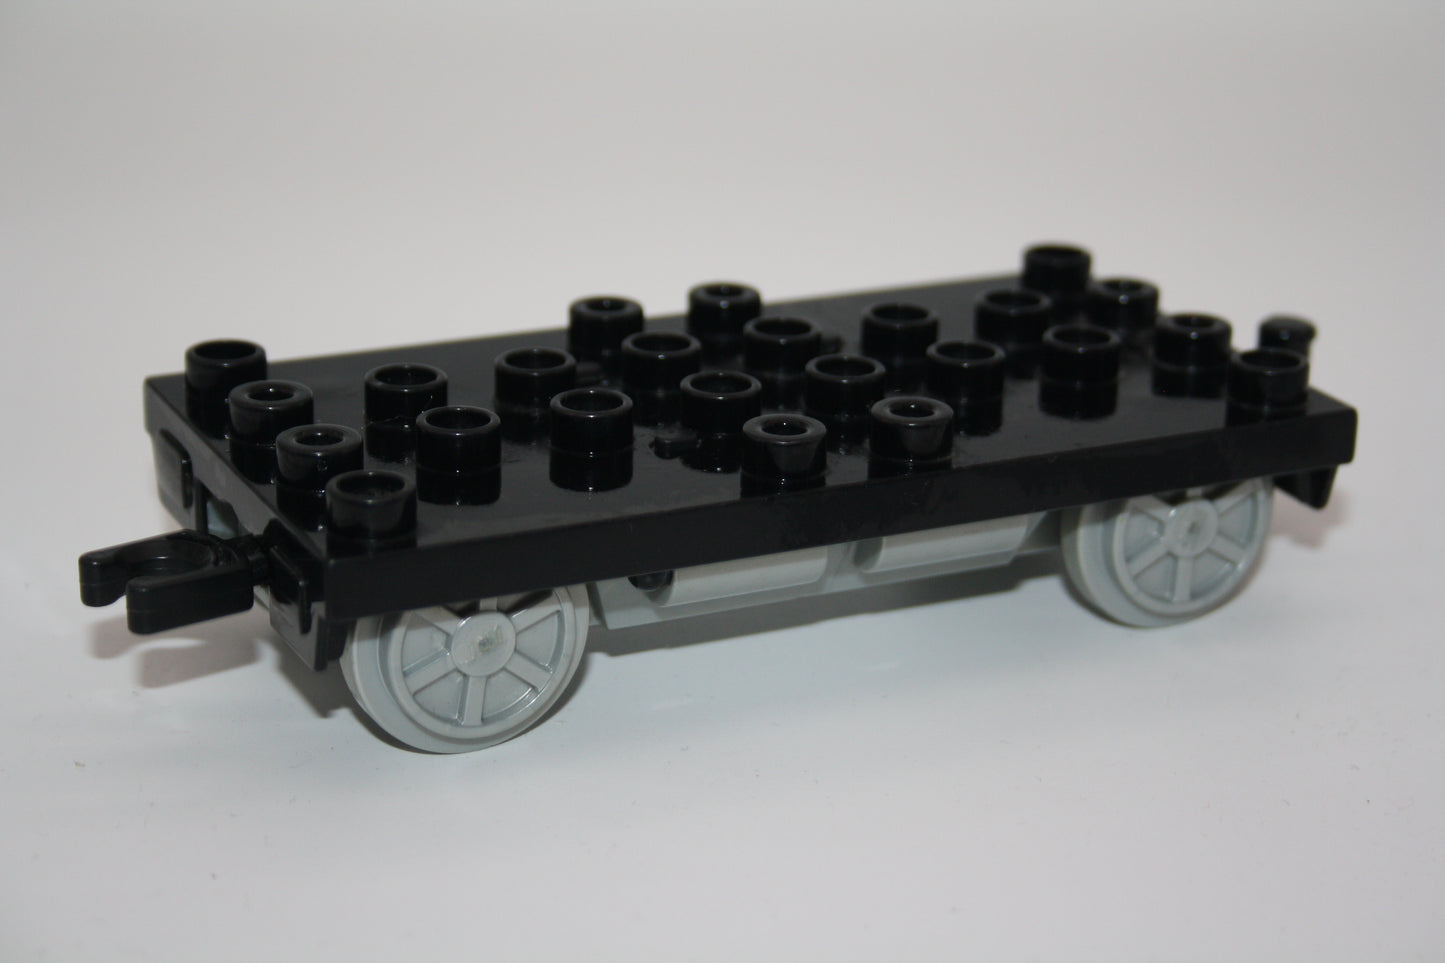 Duplo - Intelli (Fahrwerk 4x8 Noppen)- schwarz - Batteriebetrieben - Eisenbahn - Wagon/Waggon